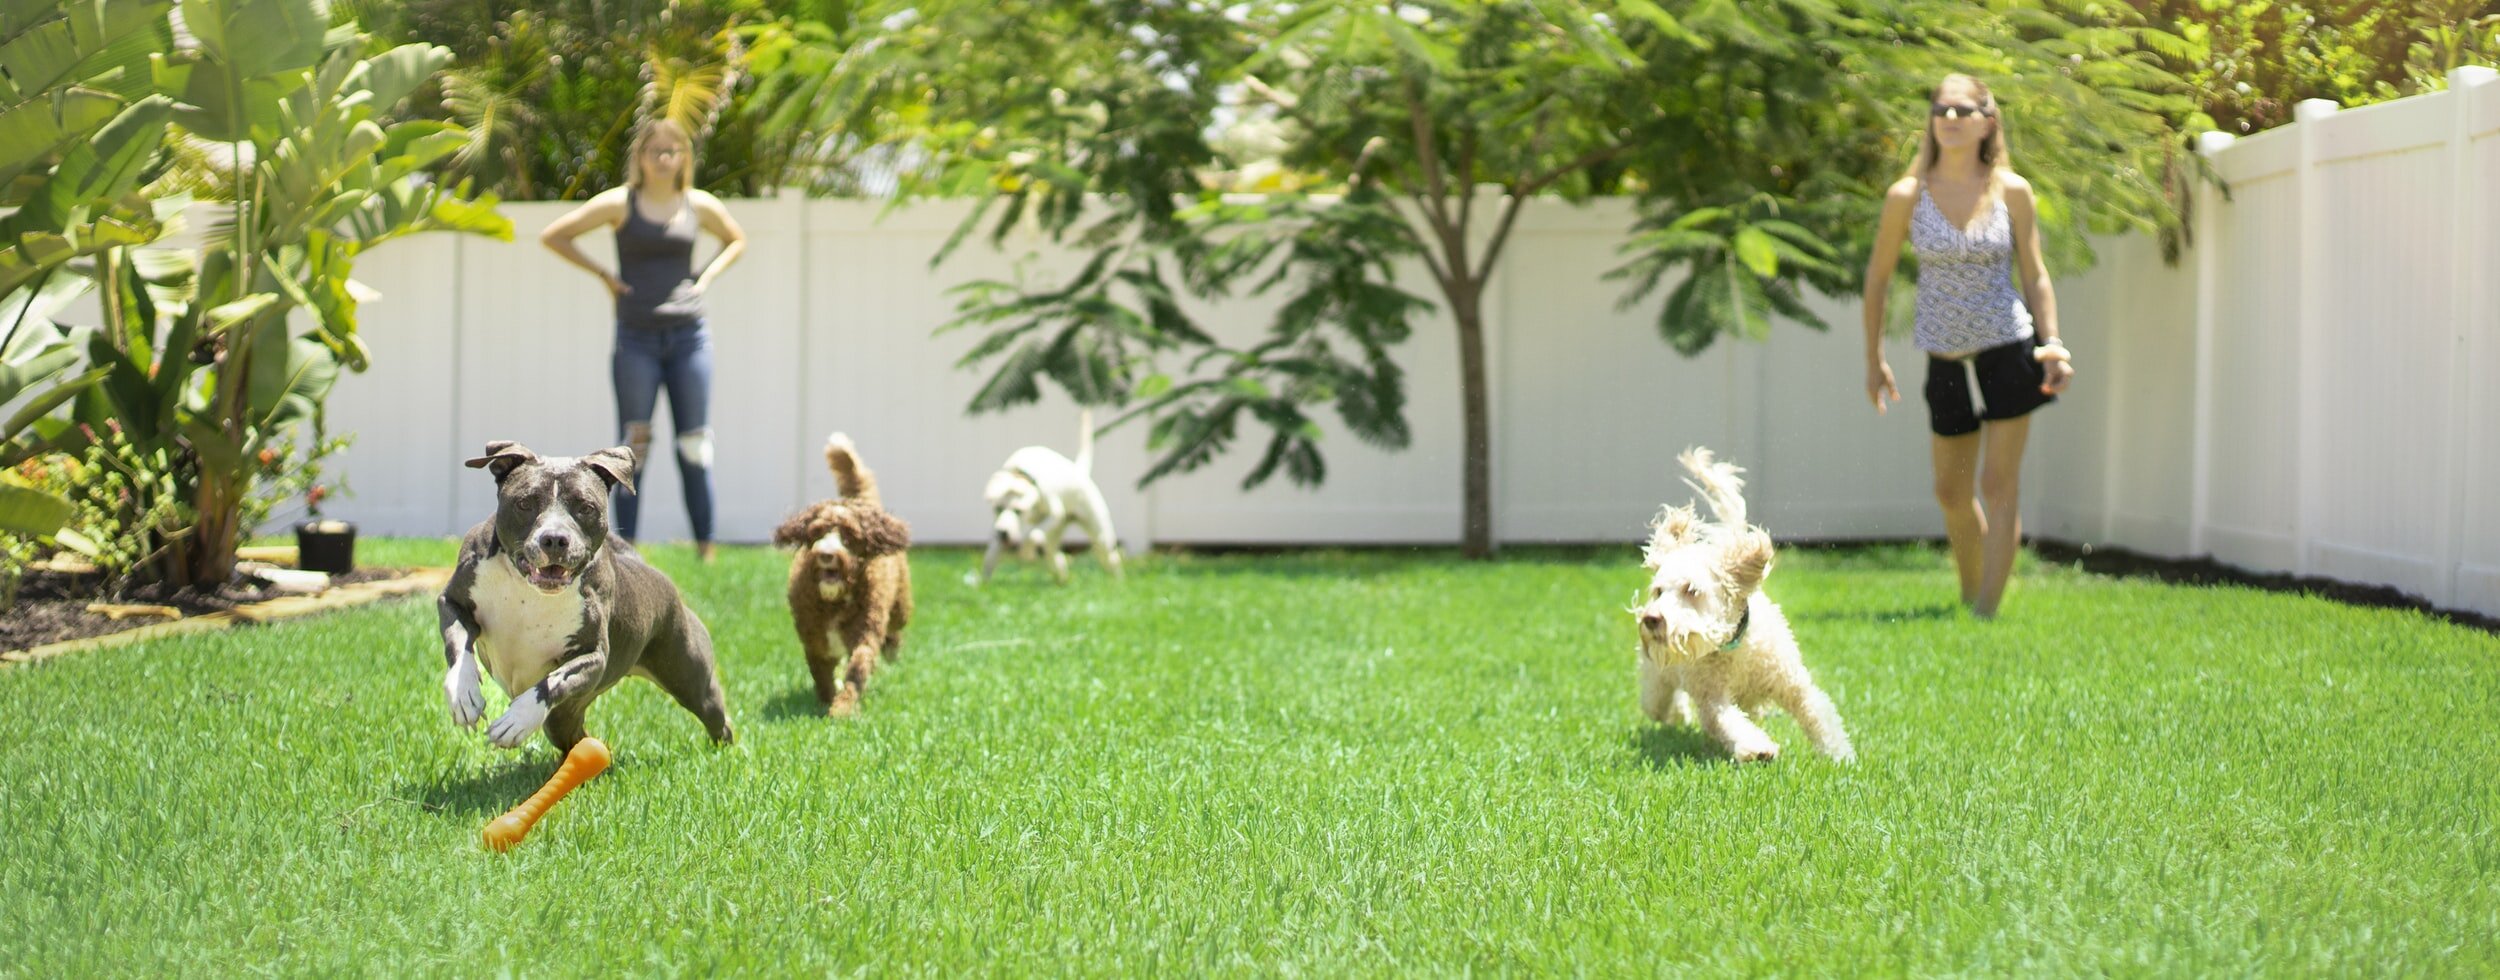 狗狗一起在指定的户外区域玩耍